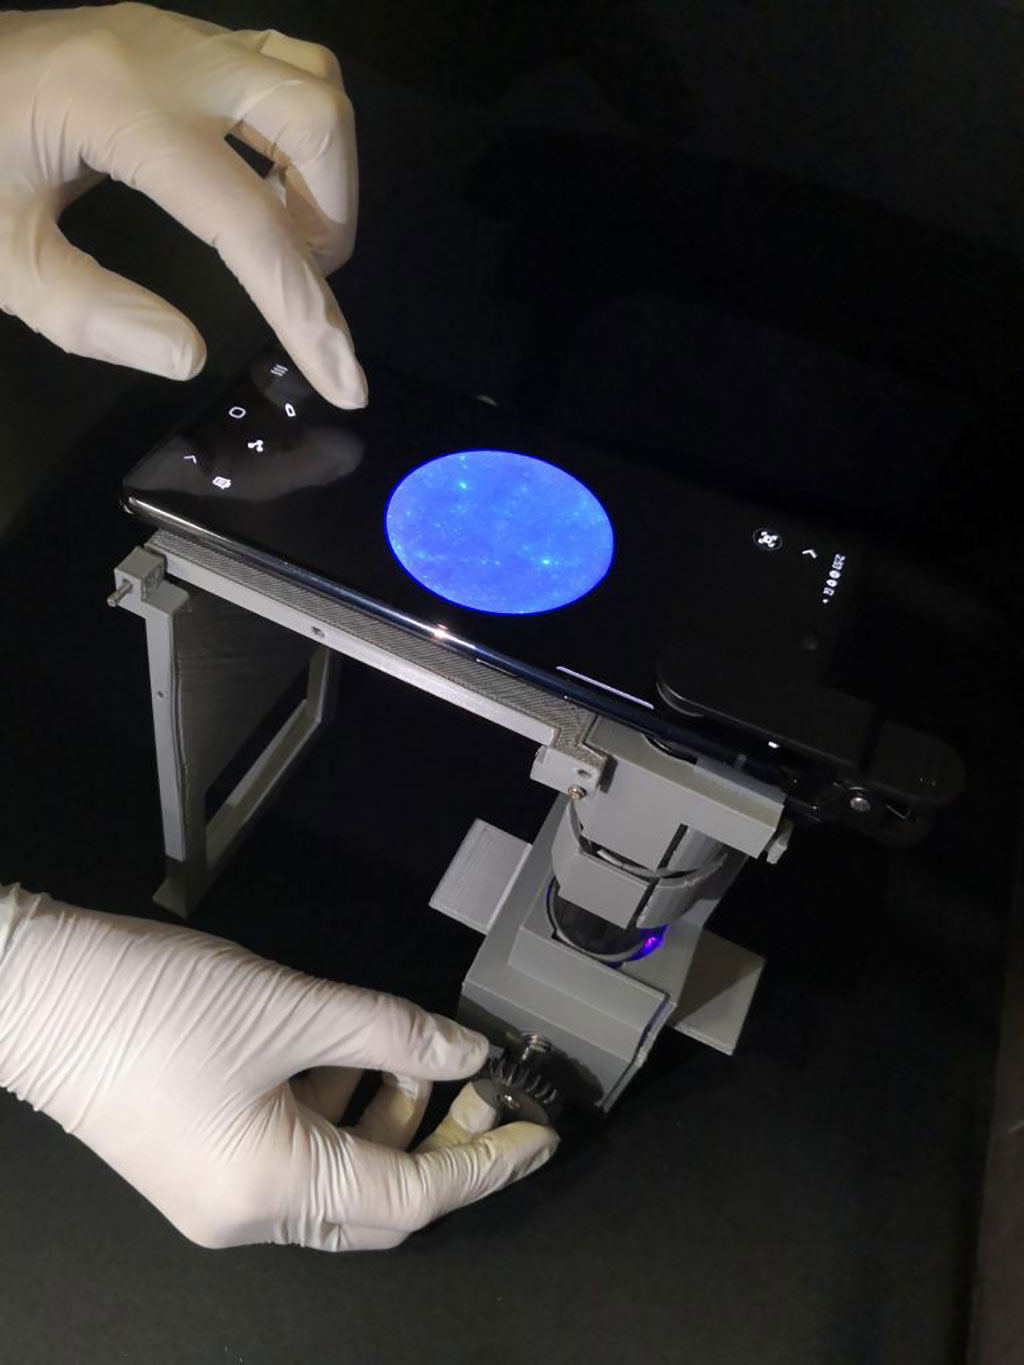 Imagen: Investigadores de la UArizona toman imágenes de una muestra usando un microscopio y un teléfono inteligente (Fotografía cortesía de la Universidad de Arizona)